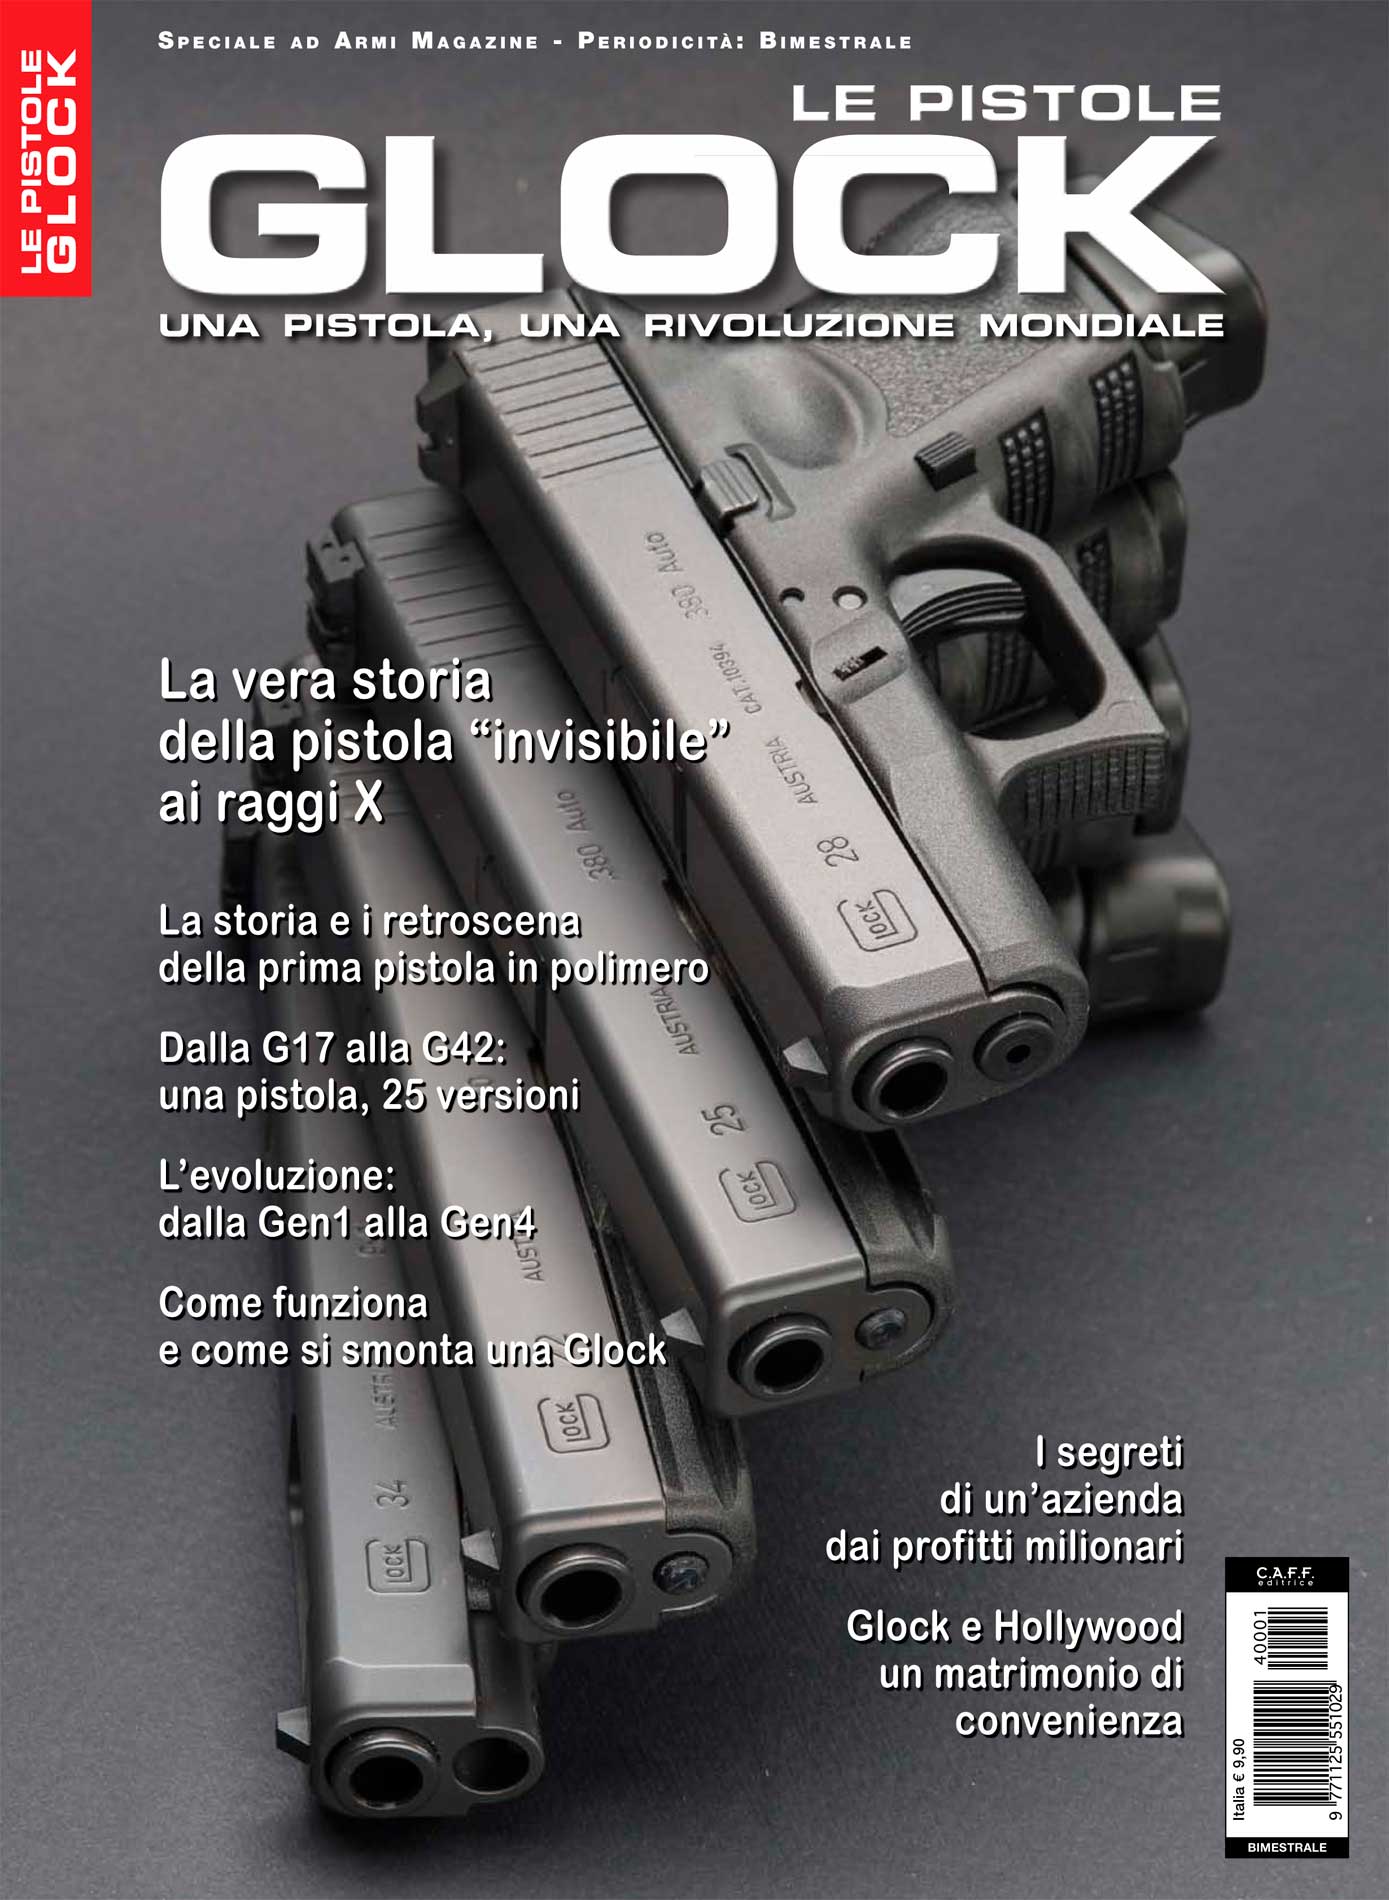 Glock Pistols - Le pistole Glock © Matteo Brogi